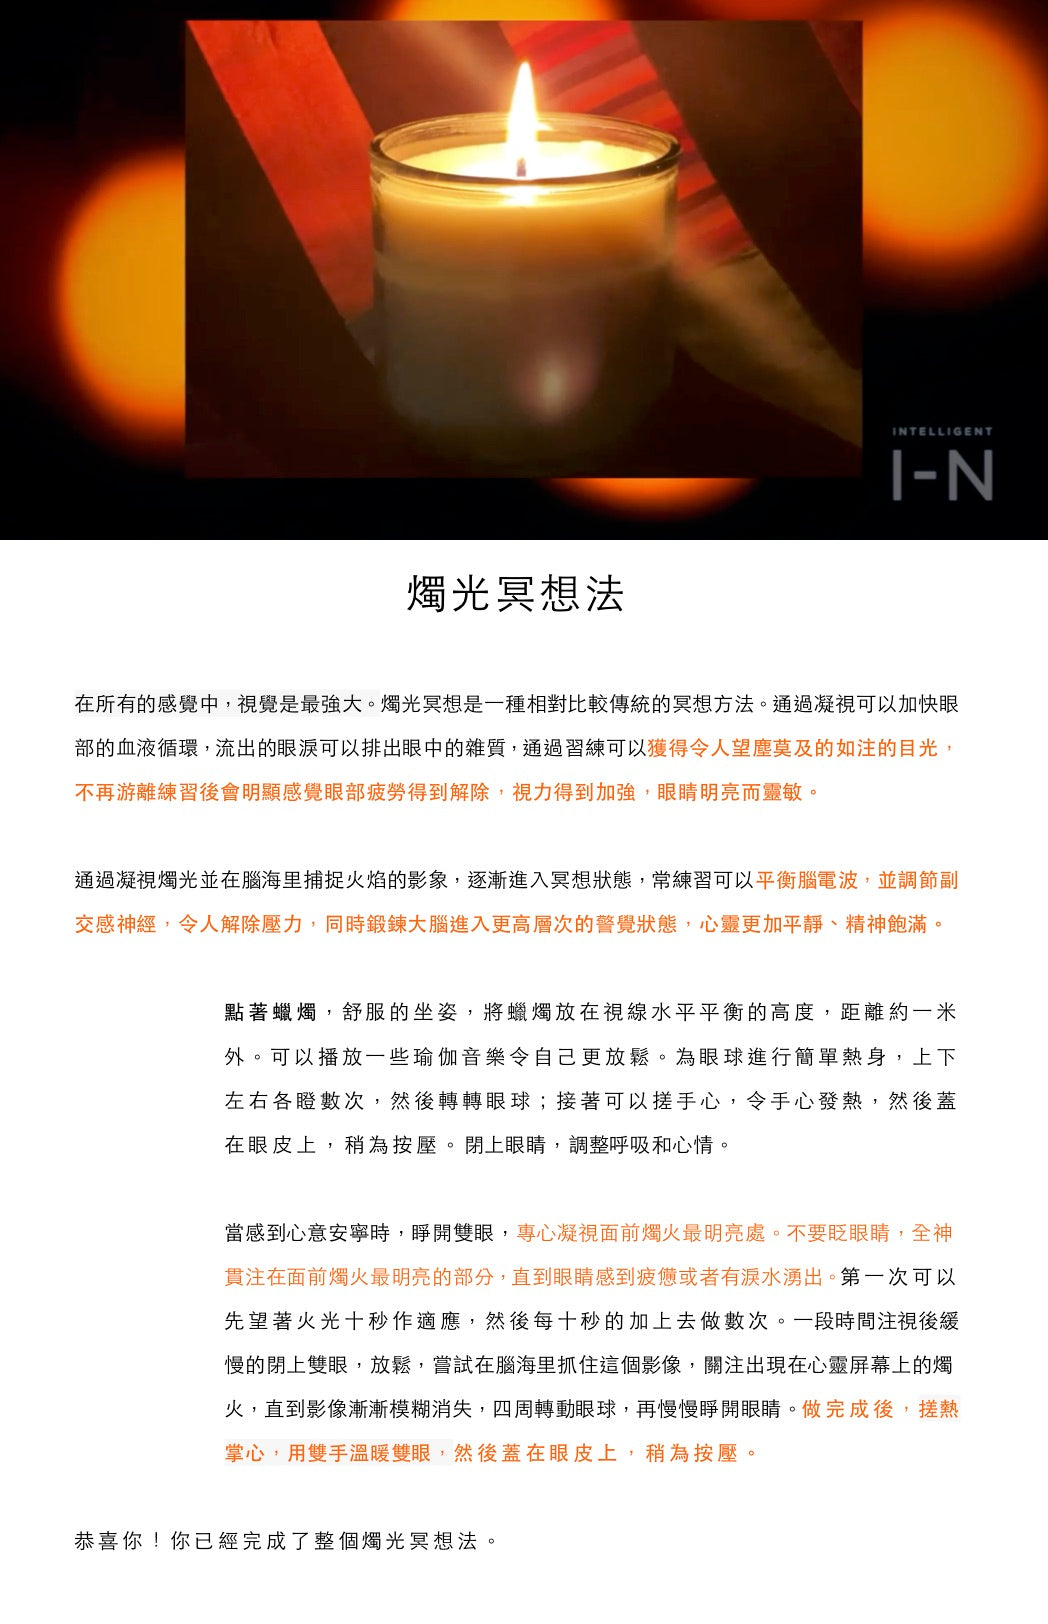 Intelli-Sense Candle - INTELLIGENT I-N Hong Kong